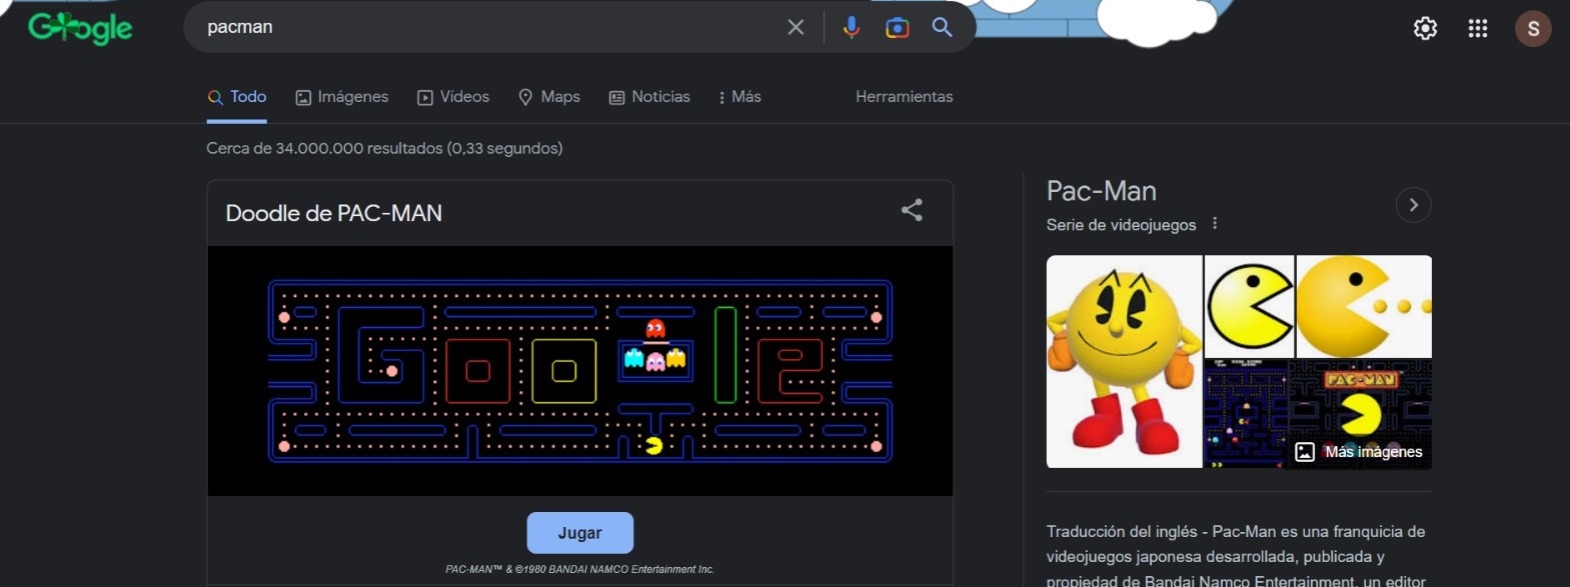 Pac-Man, el juego que está disponible en Google. (Pantallazo)